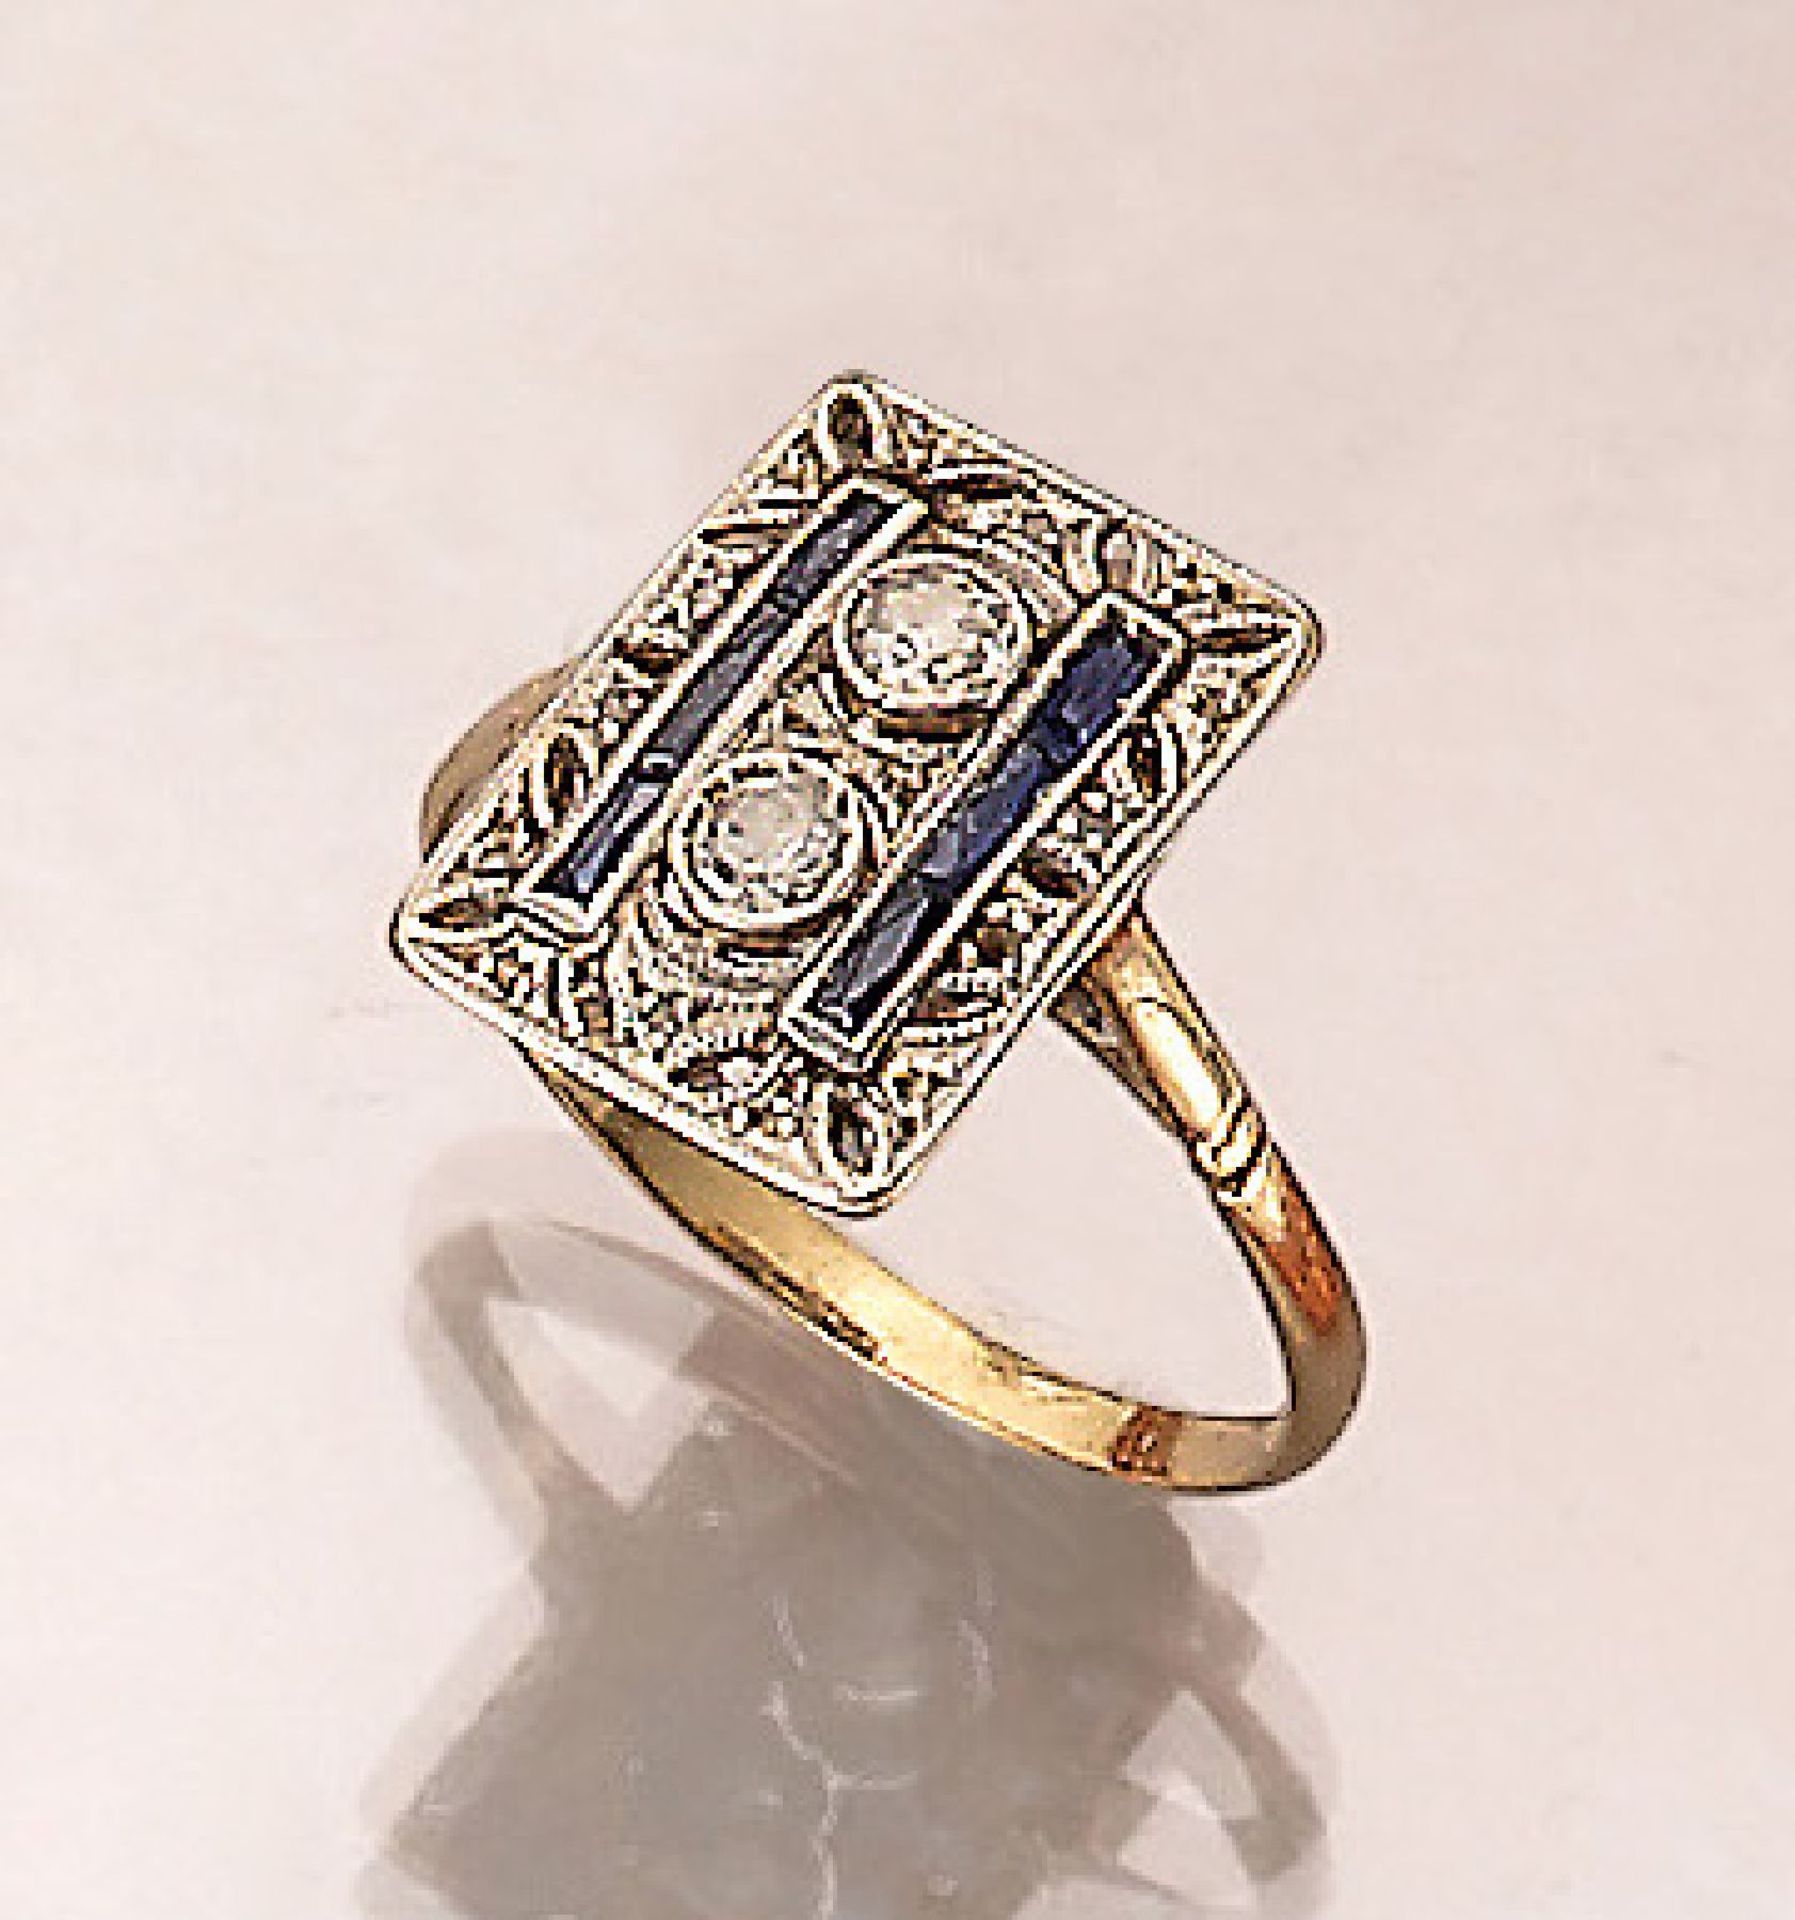 18 kt Gold Art-Deco Ring mit Diamanten und Saphiren, um 1930, GG/WG 750/000, Ringkopf mit floraler